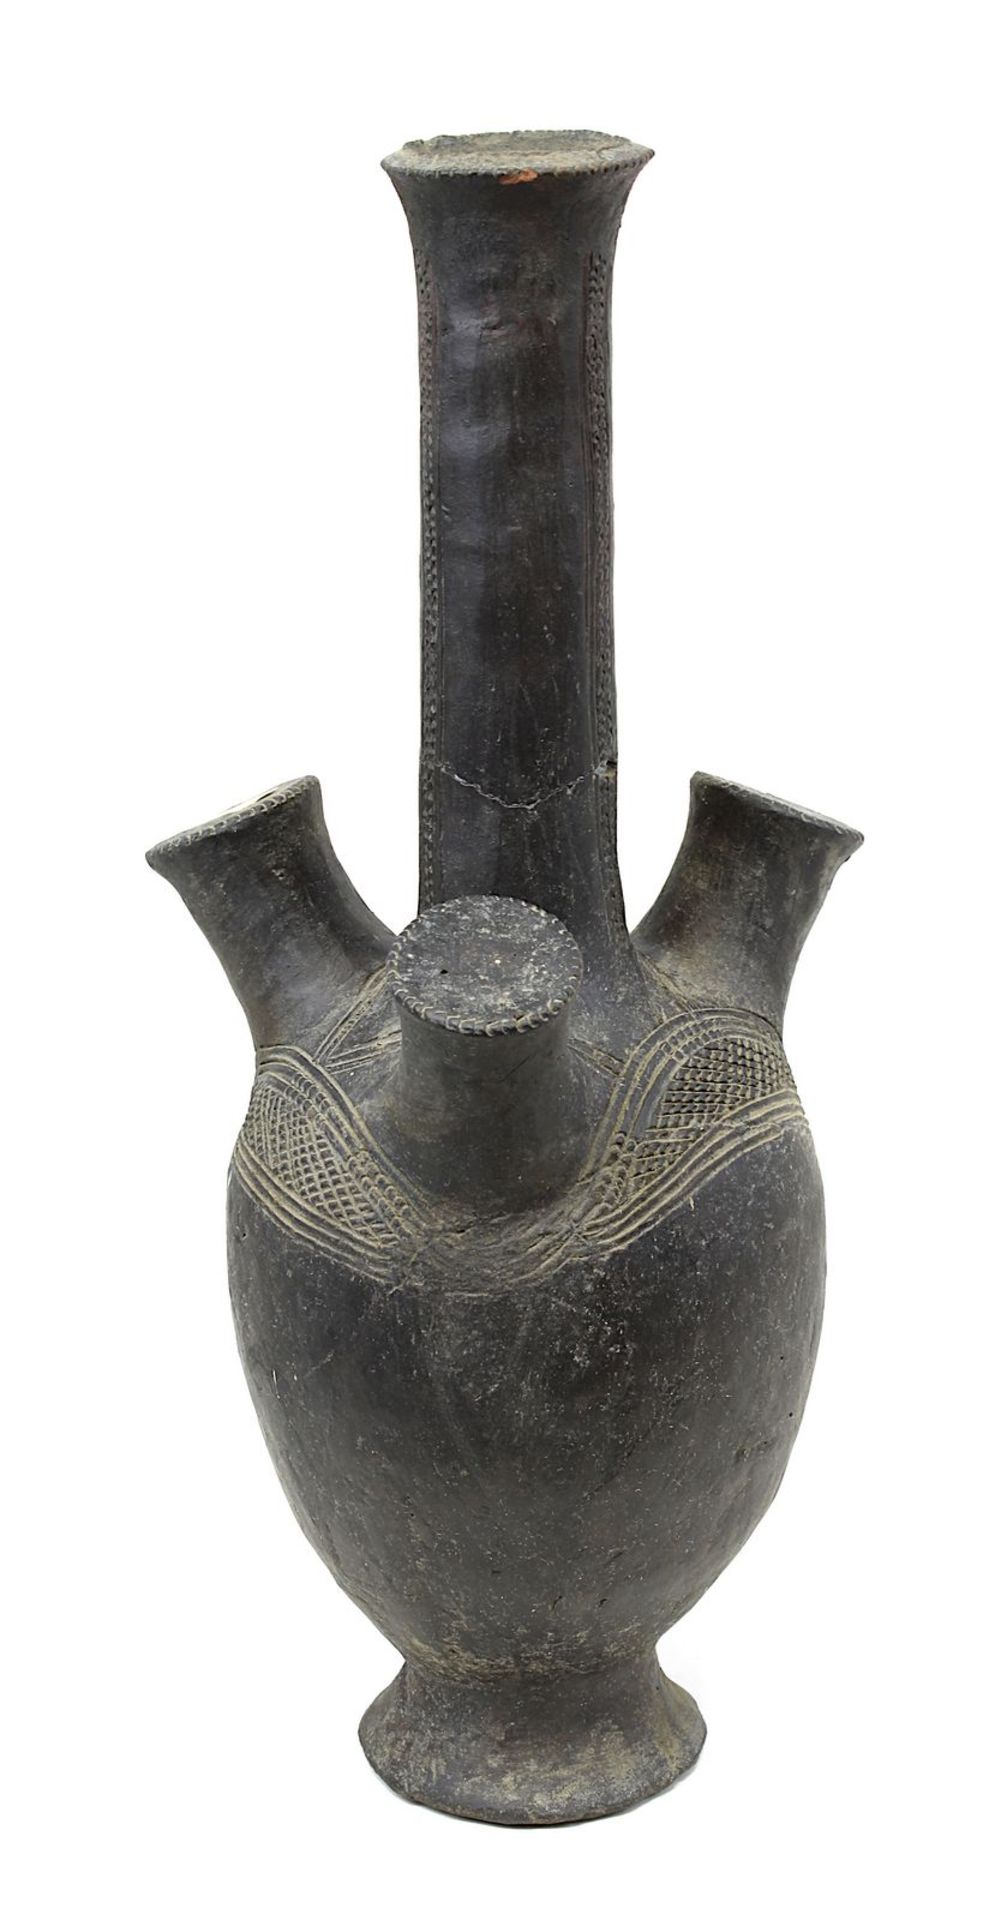 Seltenes afrikanisches antikes Flaschengefäß mit 3 zylindrischen Handhaben, wohl nördliches